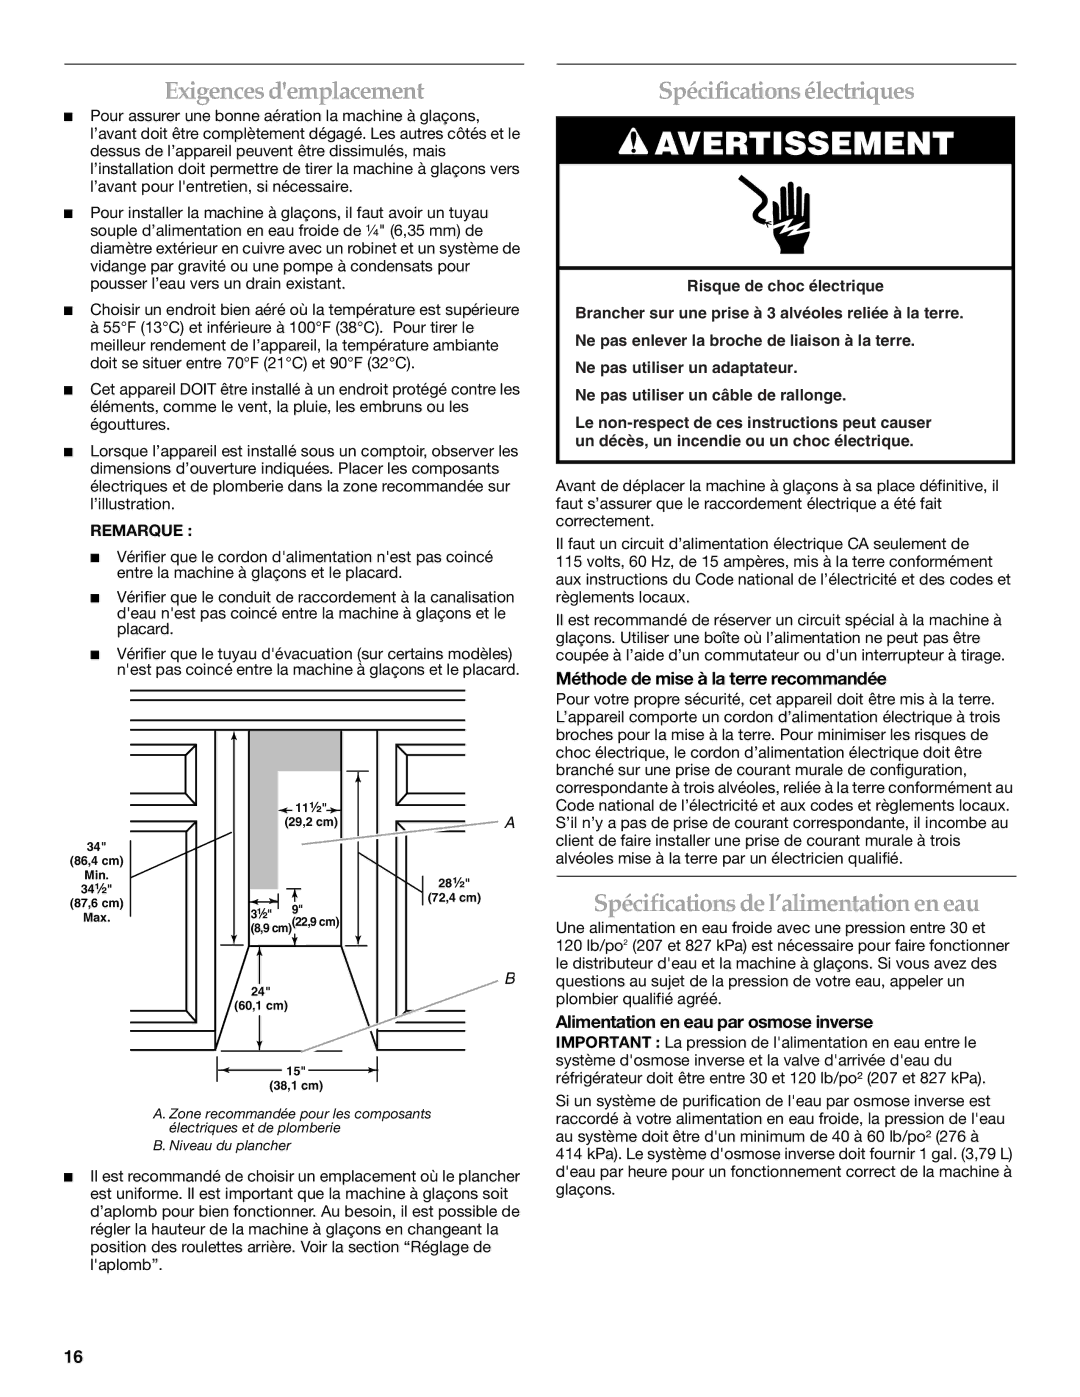 KitchenAid 2313684A manual Exigences demplacement, Spécificationsélectriques, Spécifications de l’alimentation en eau 